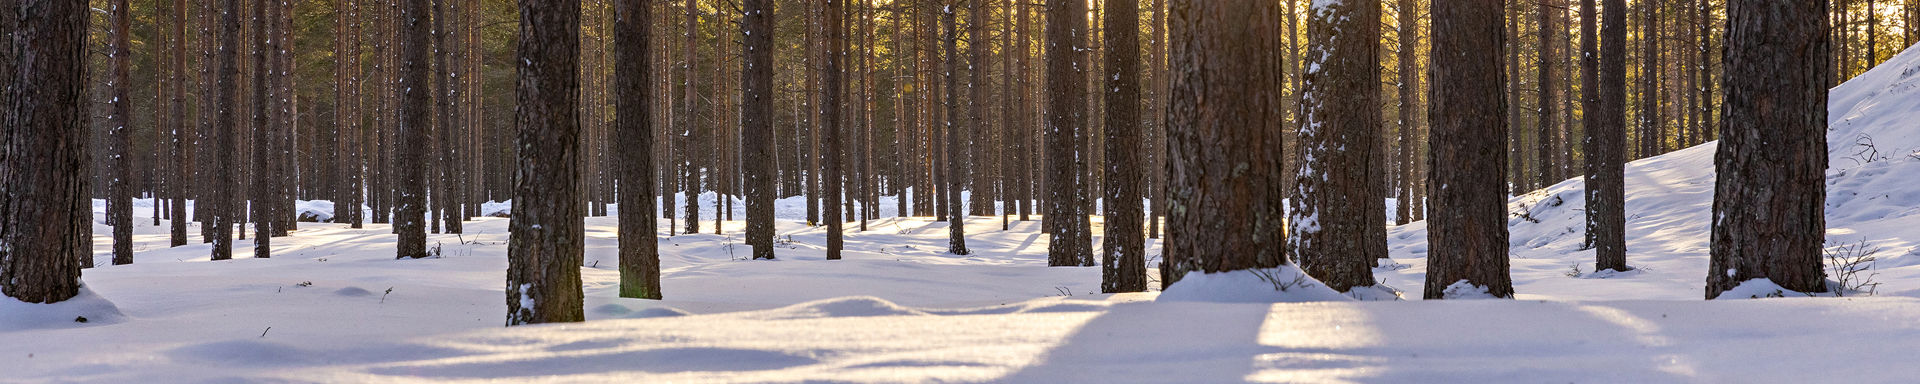 Aurinko paistaa talvisen metsän välistä.